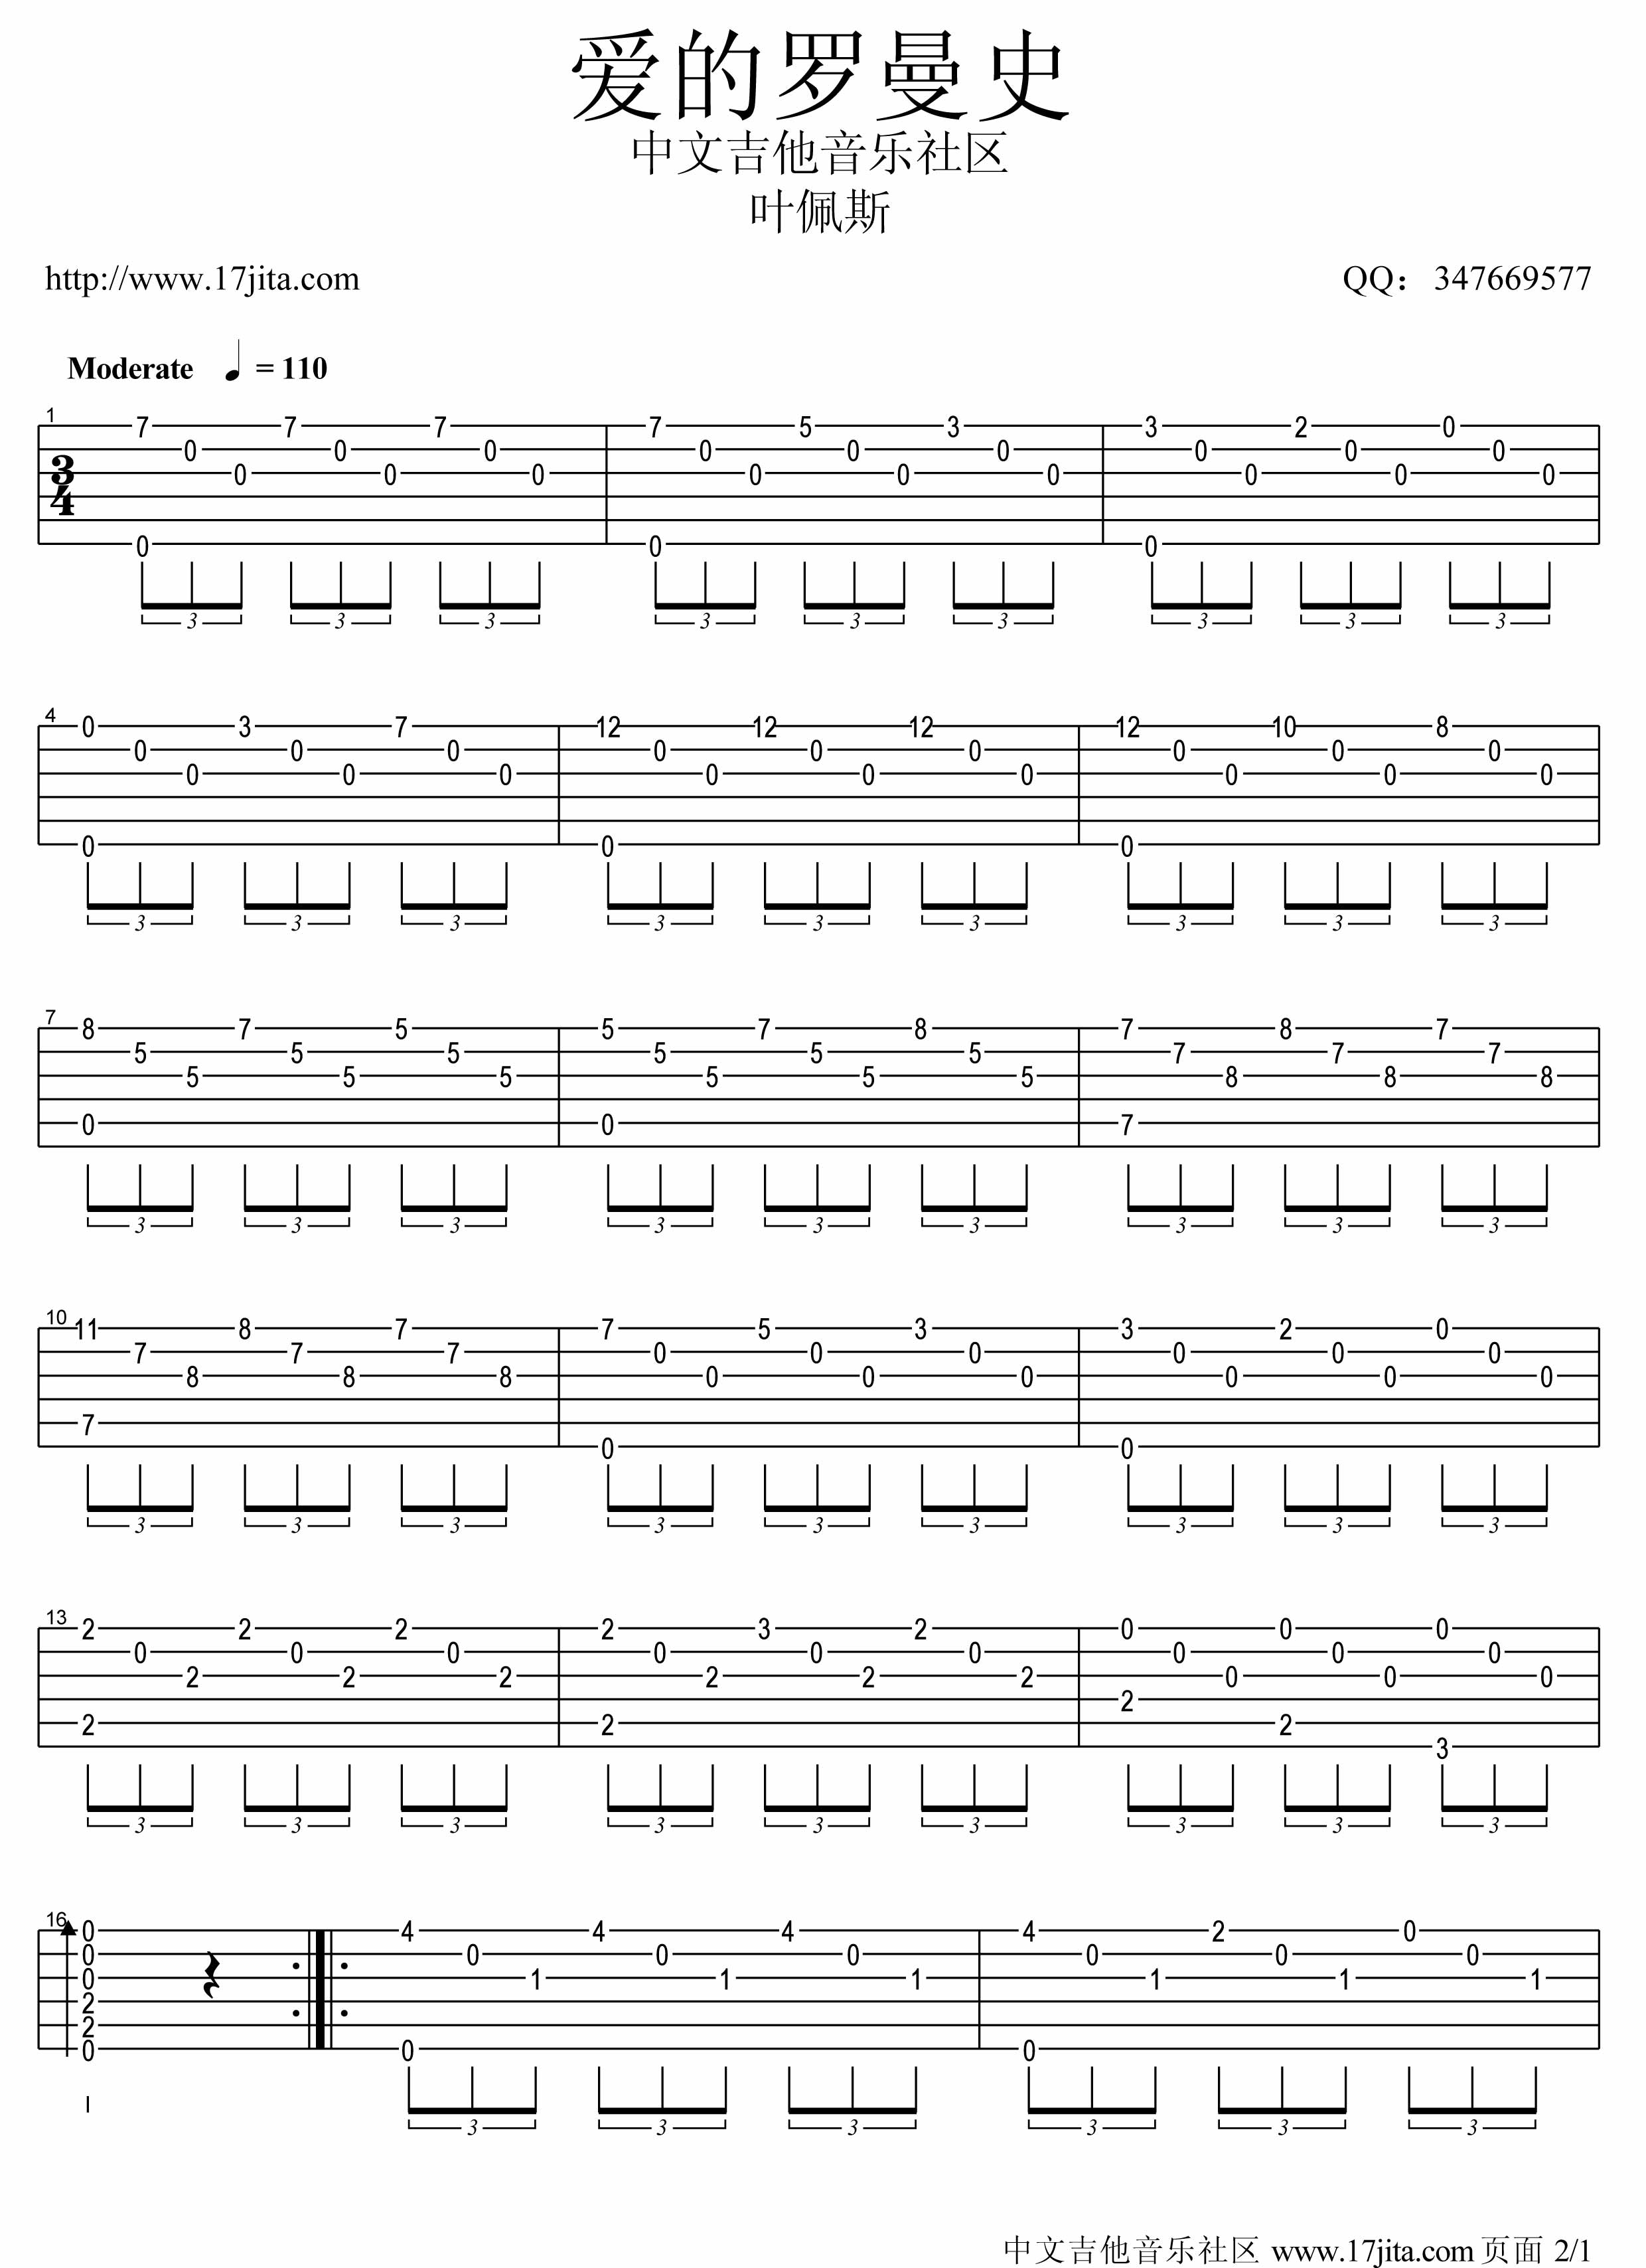 爱的罗曼斯吉他谱 - 吉他独奏谱 - 根据原谱完全版 - 琴谱网